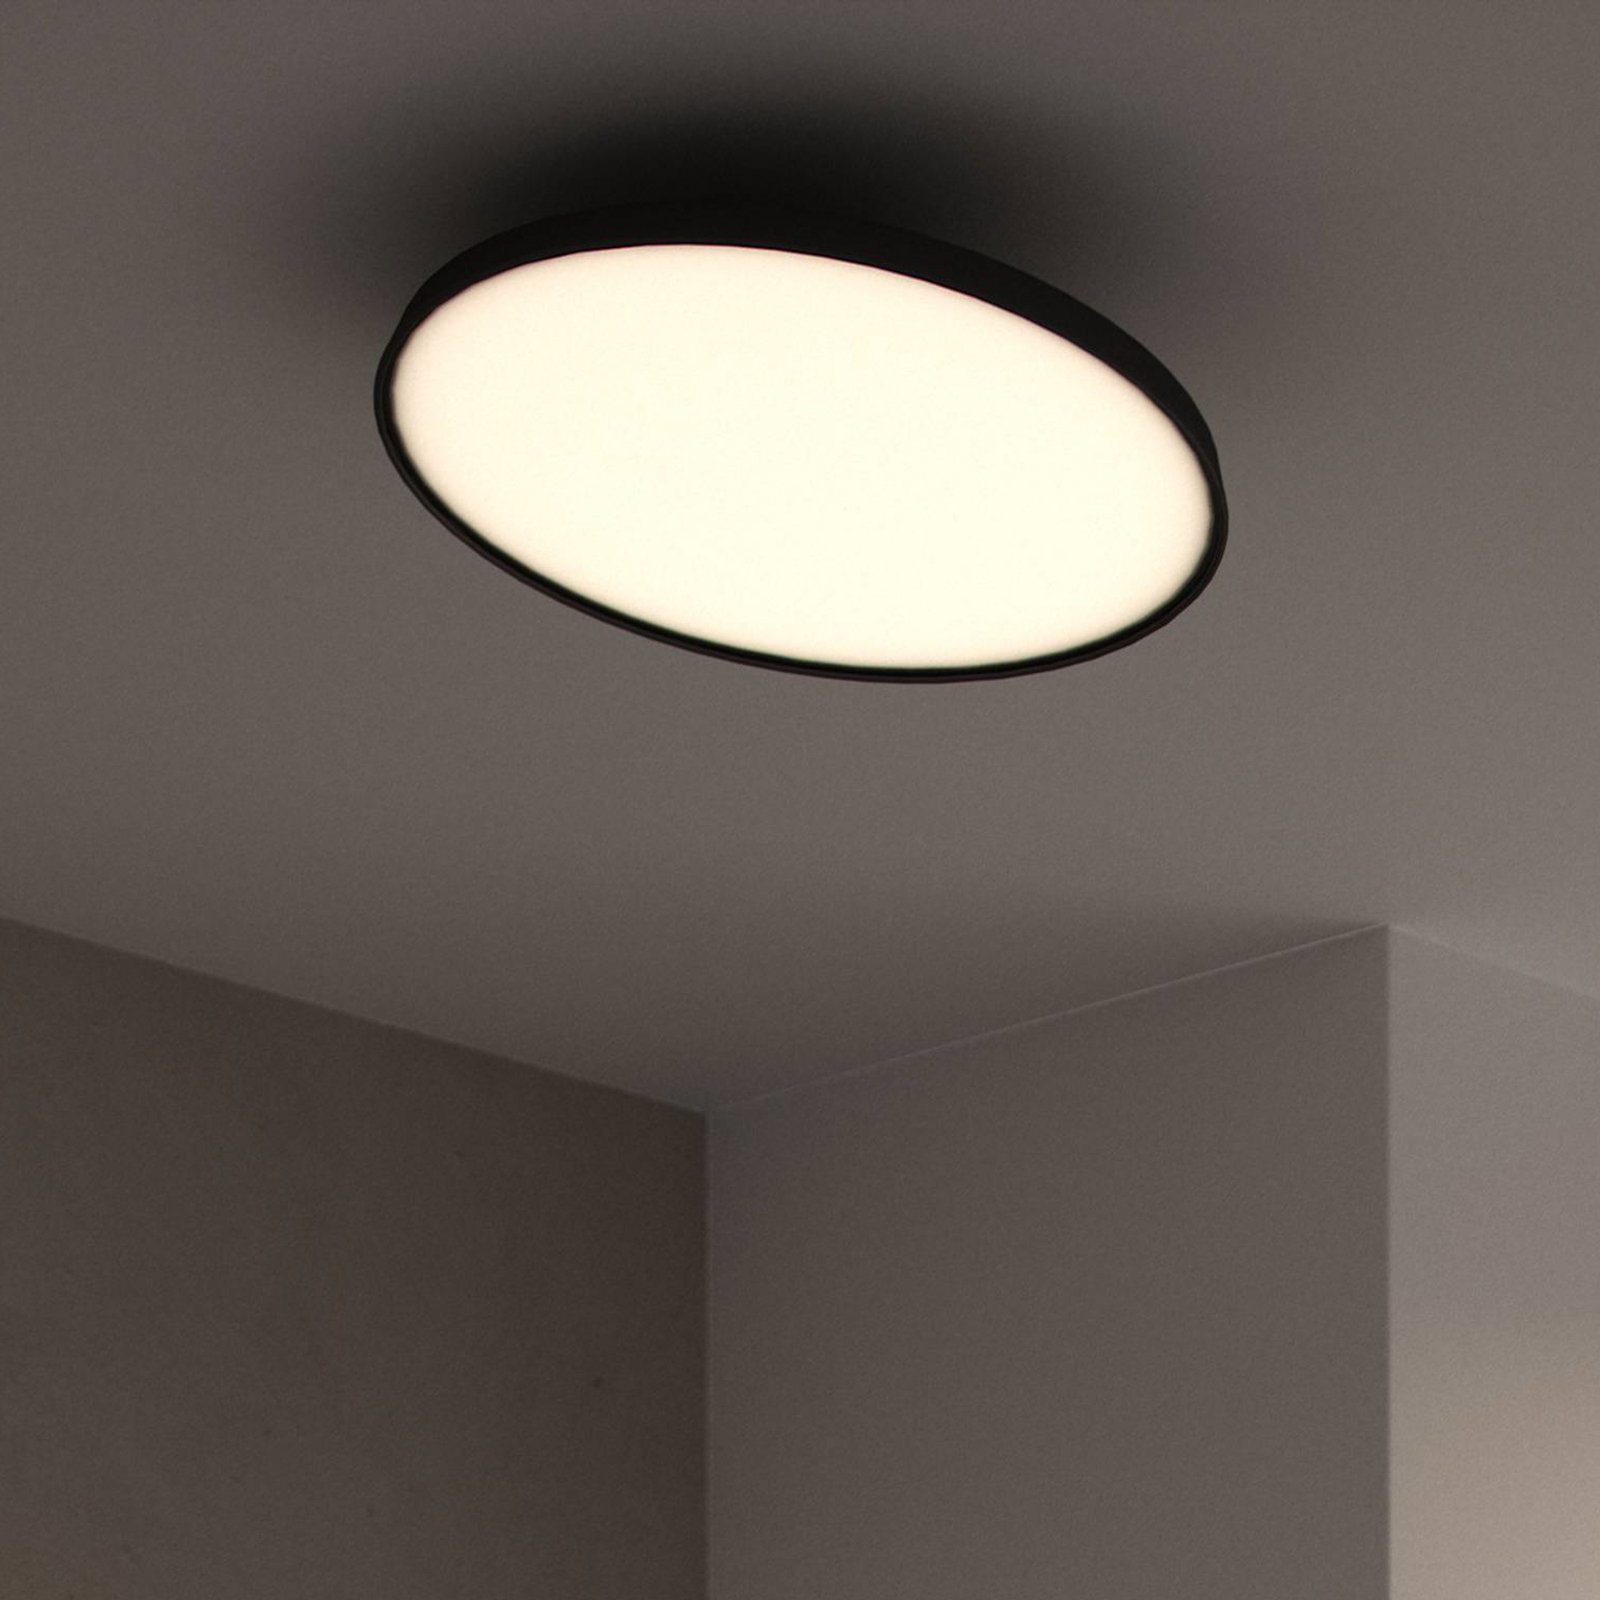 LED ceiling light Kaito Pro, black, Ø 38.5 cm